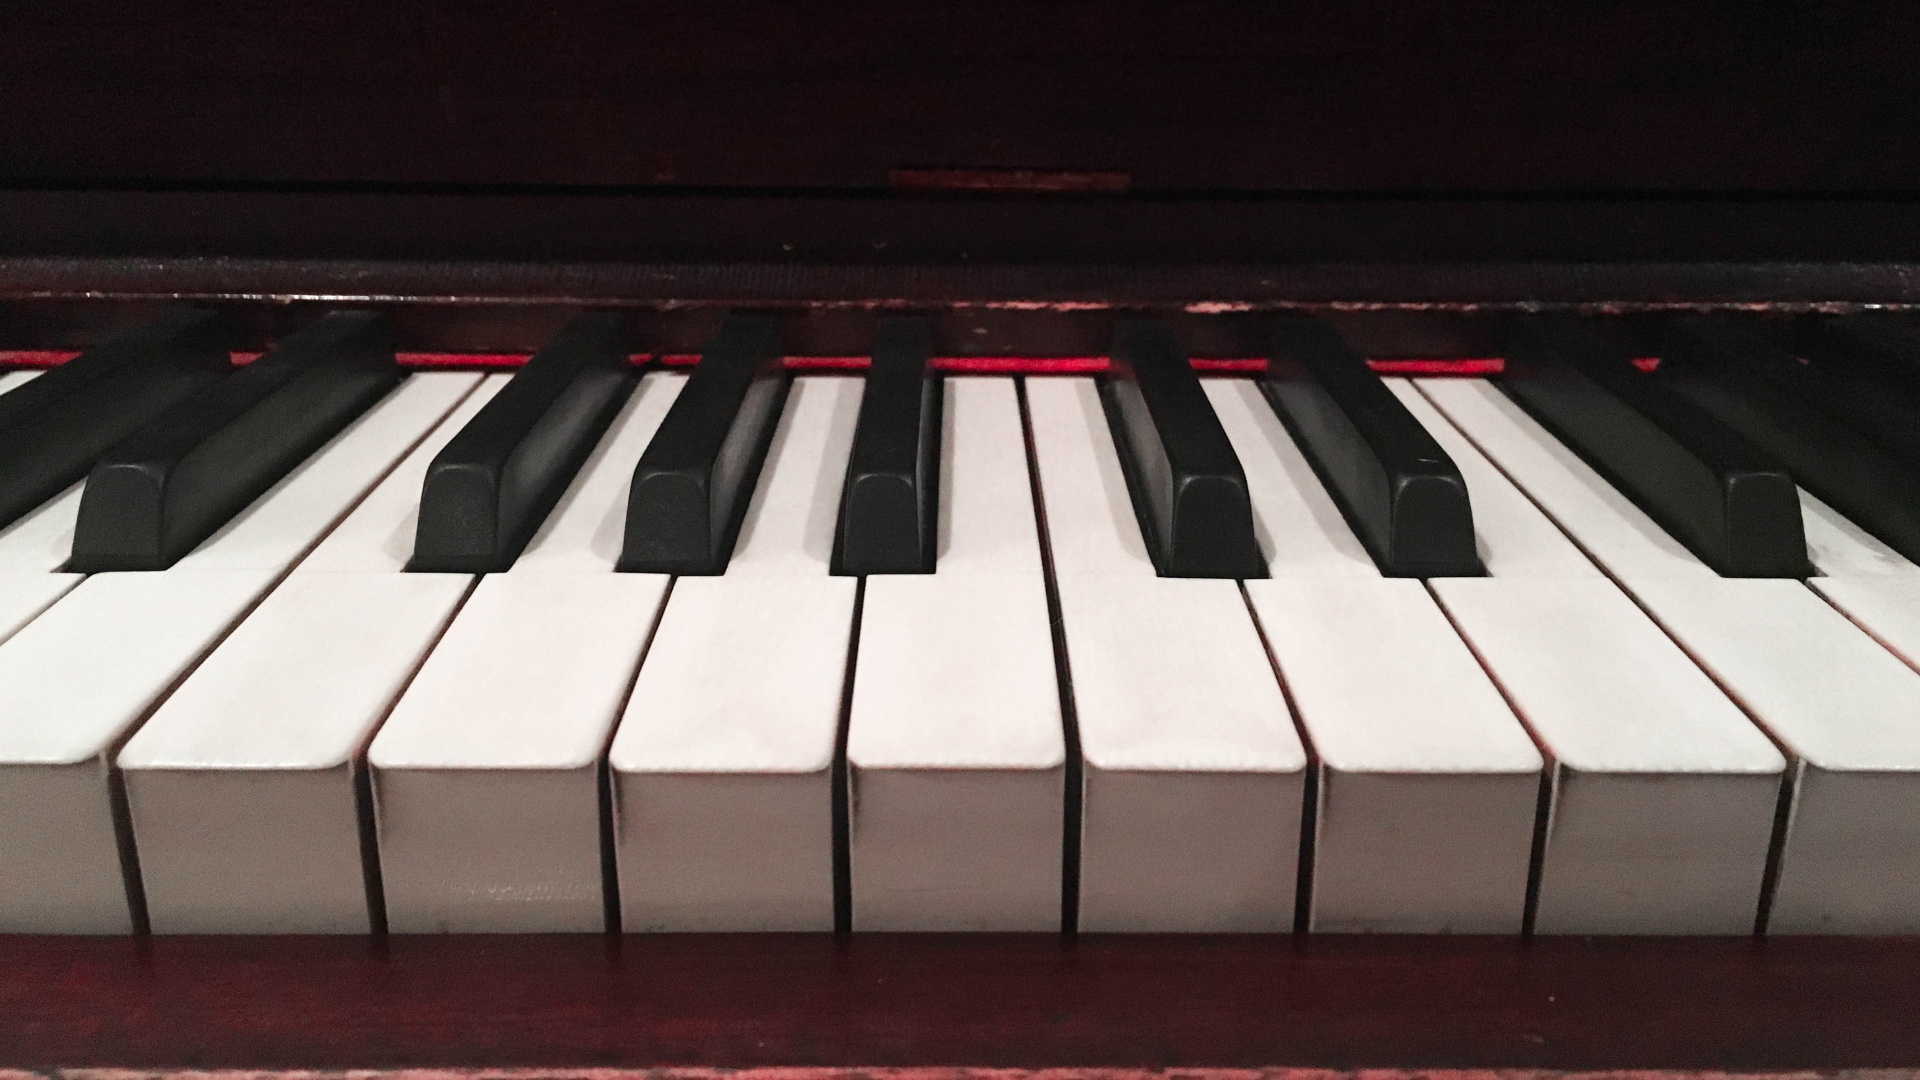 钢琴, 音乐键盘, 键盘, 关键, 电子仪器 壁纸 1920x1080 允许